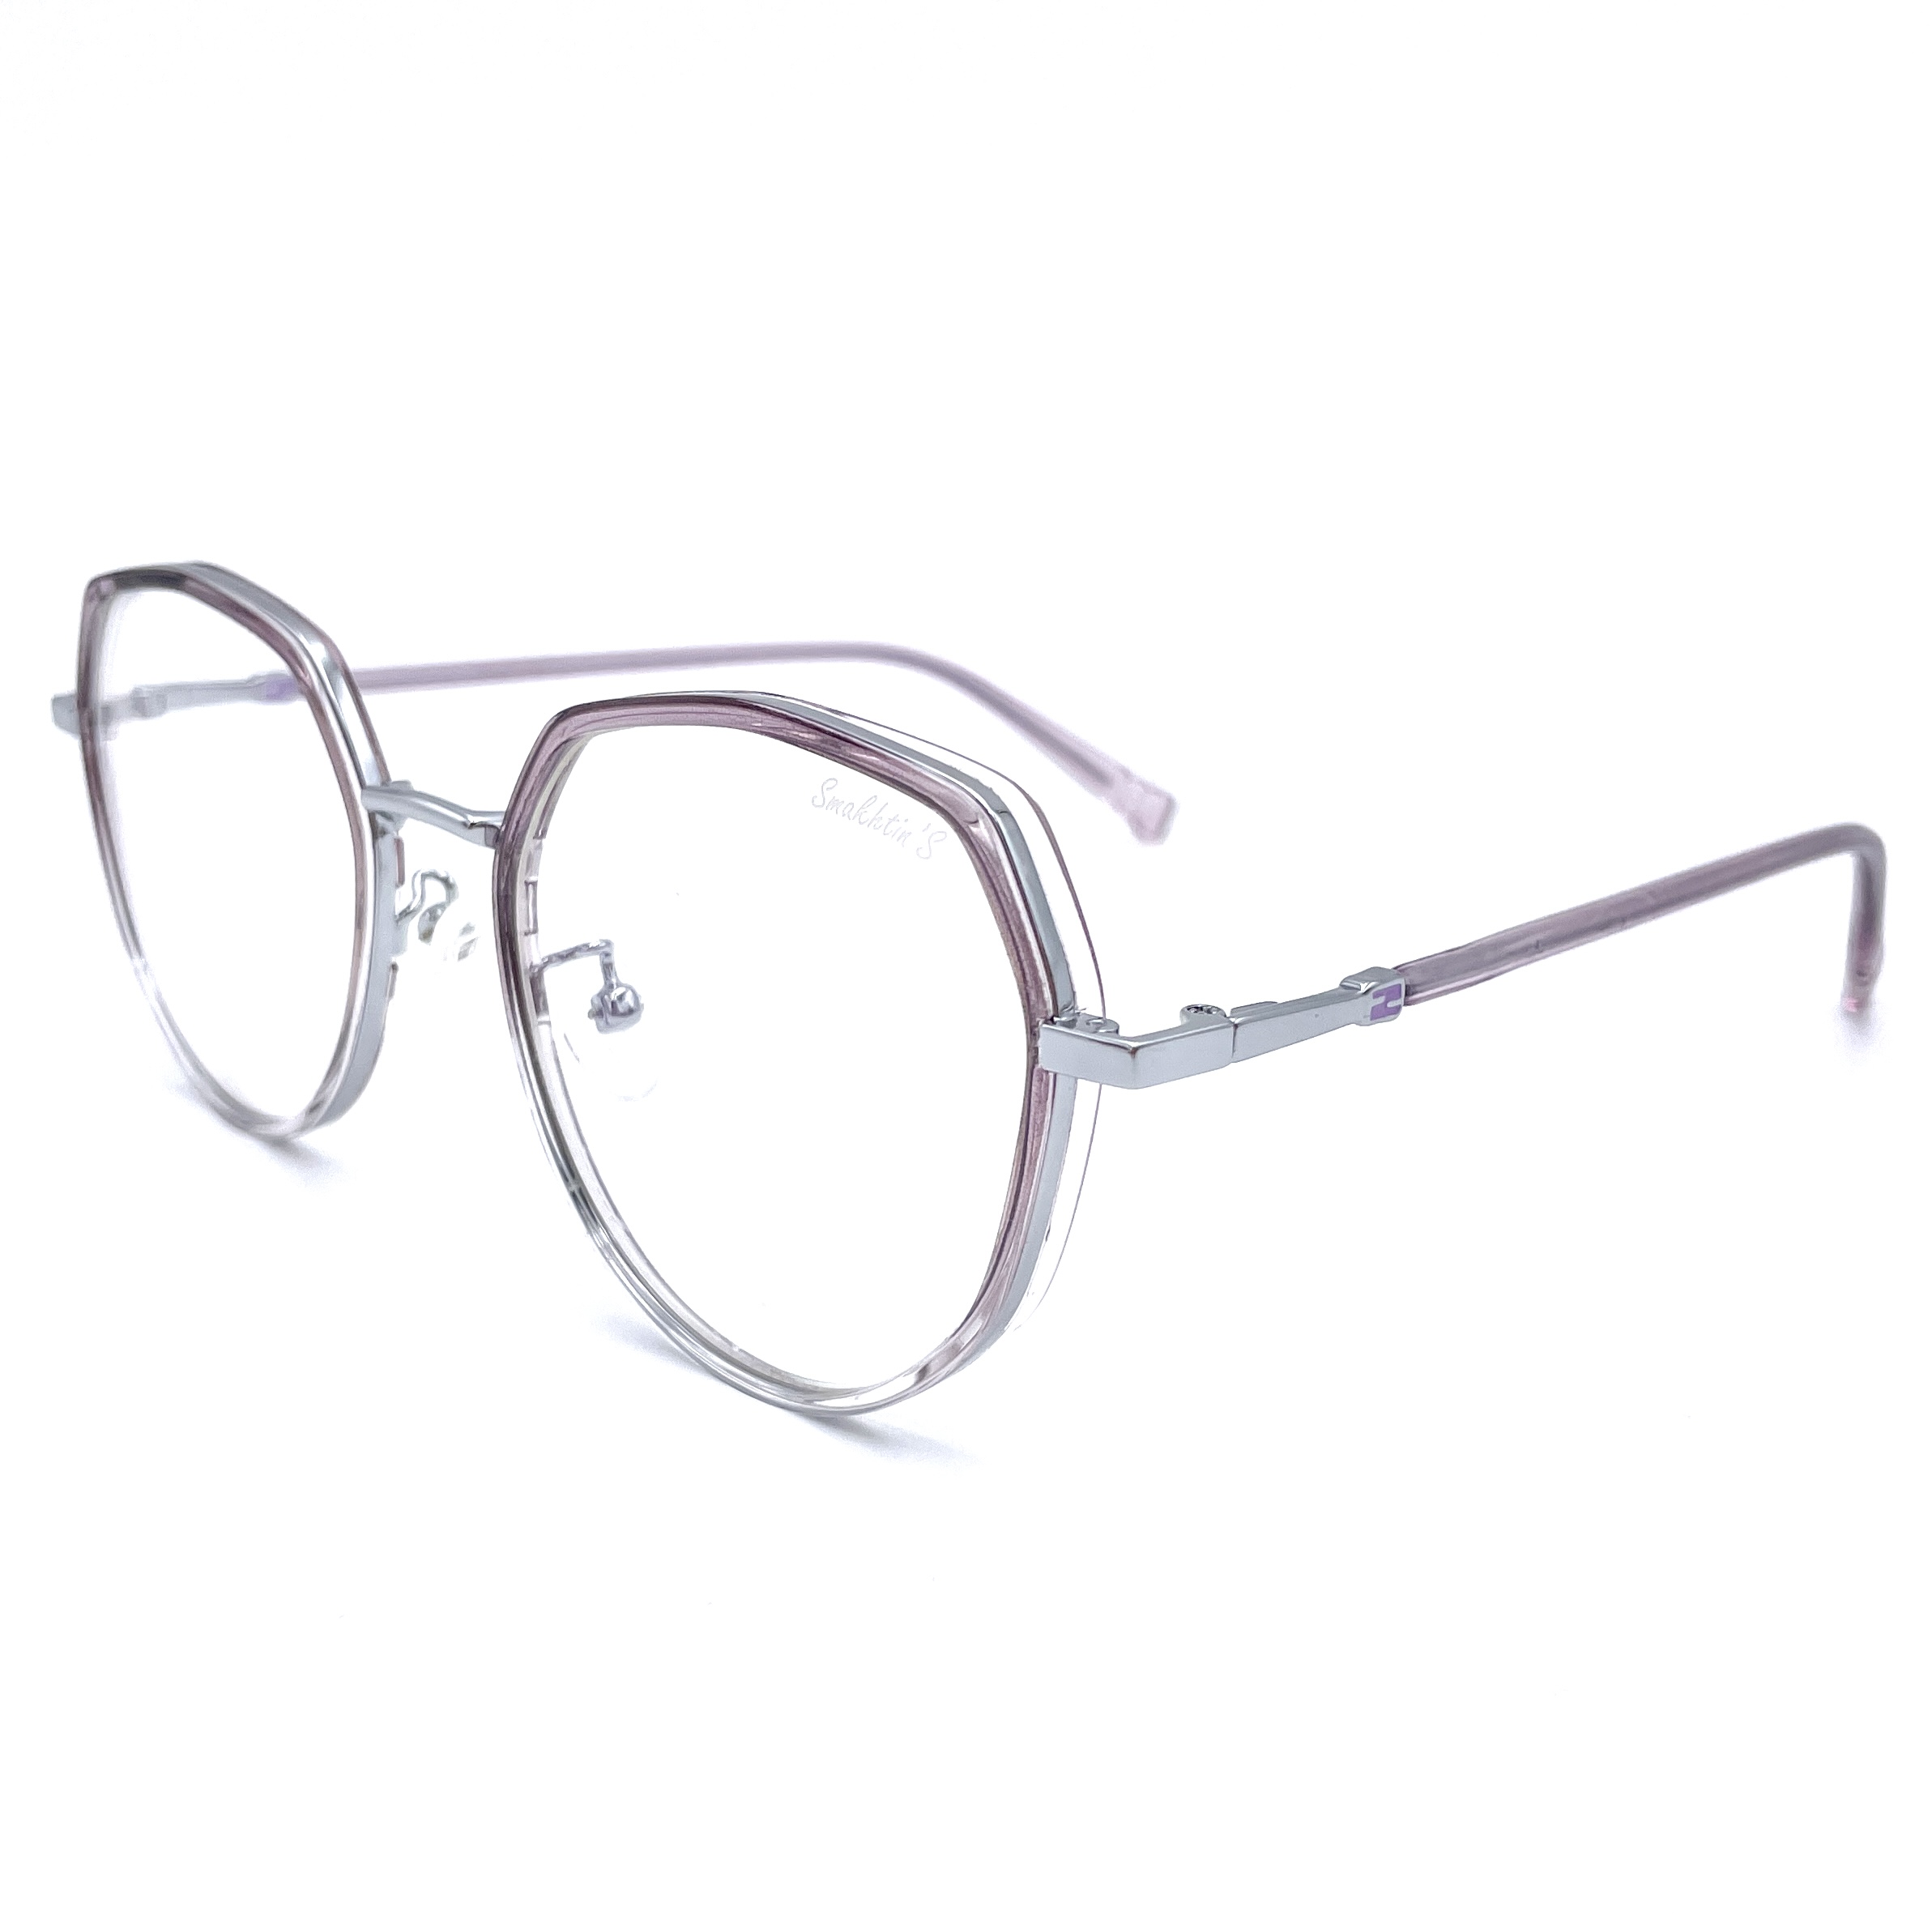 Очки для компьютера Smakhtin'S eyewear & accessories серебристый, фиолетовый (6167C4)